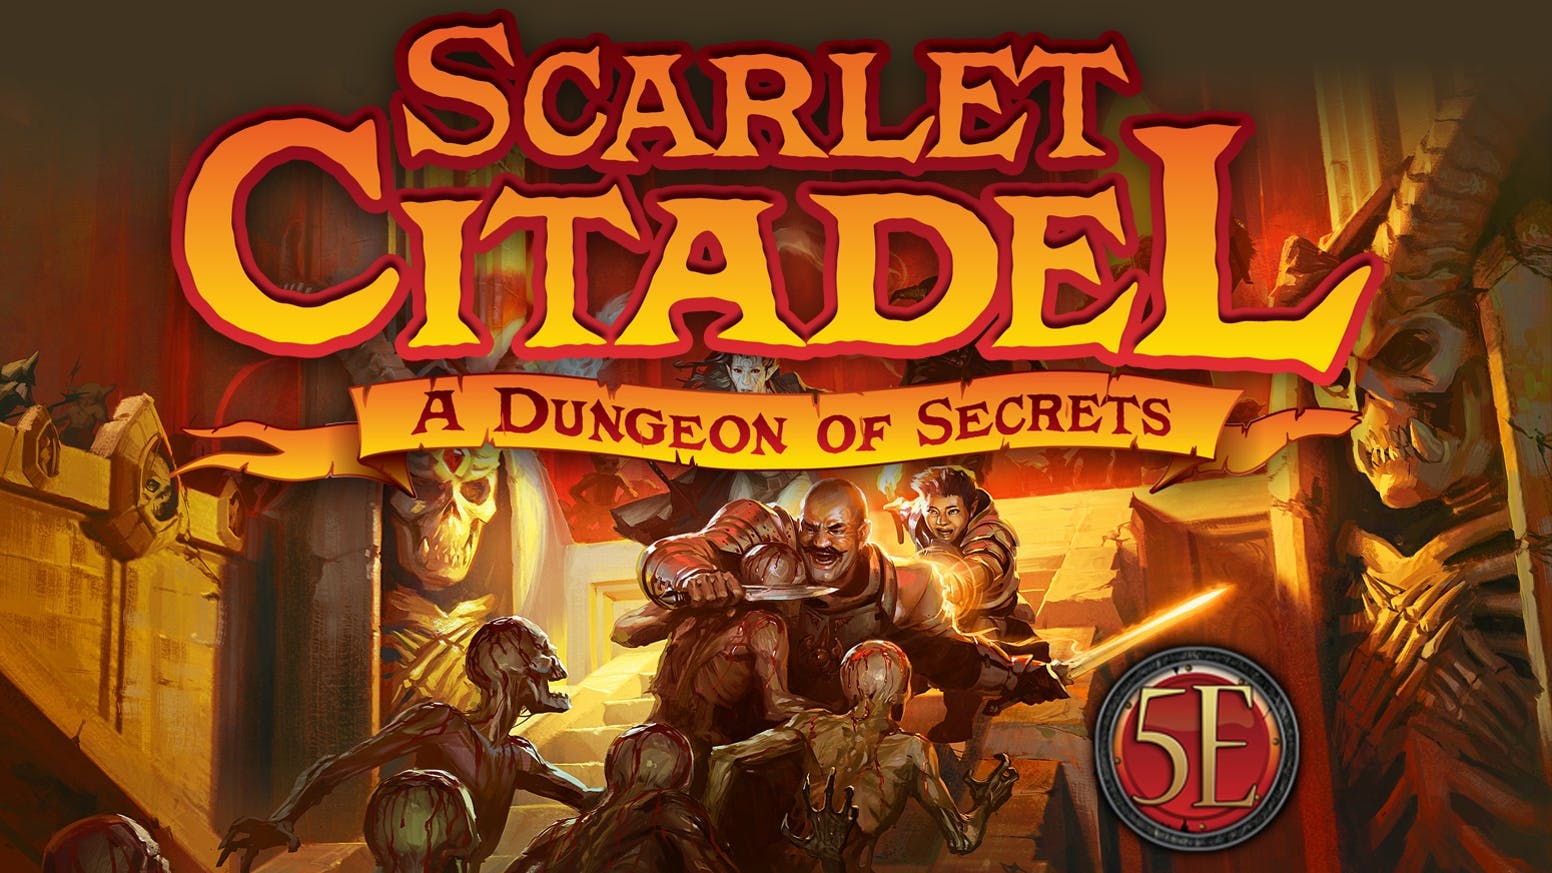 Scarlet Citadel Campaign